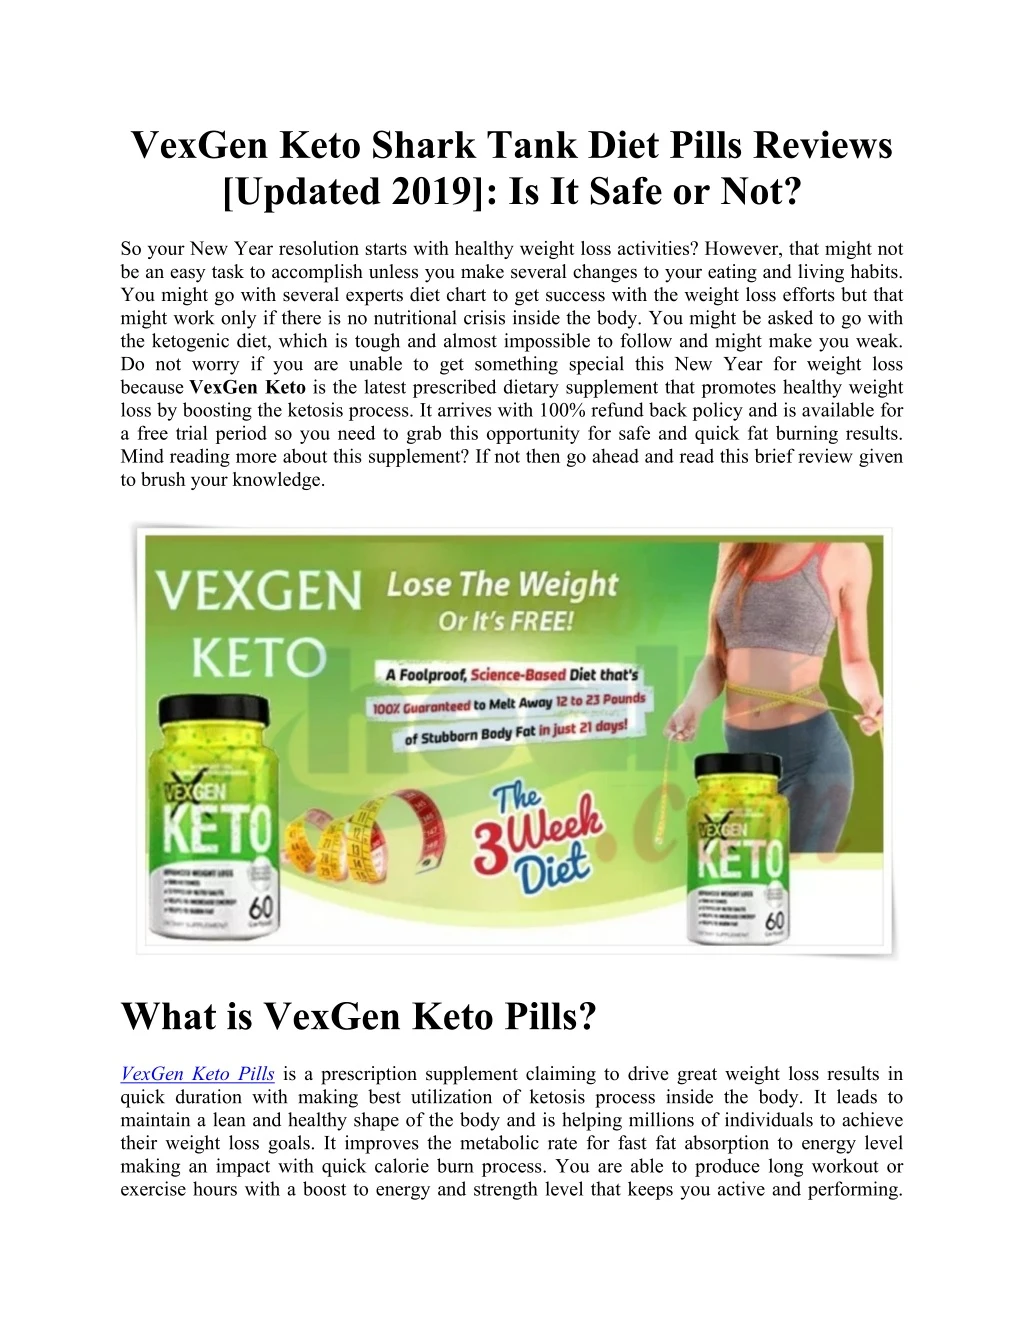 vexgen keto shark tank diet pills reviews updated